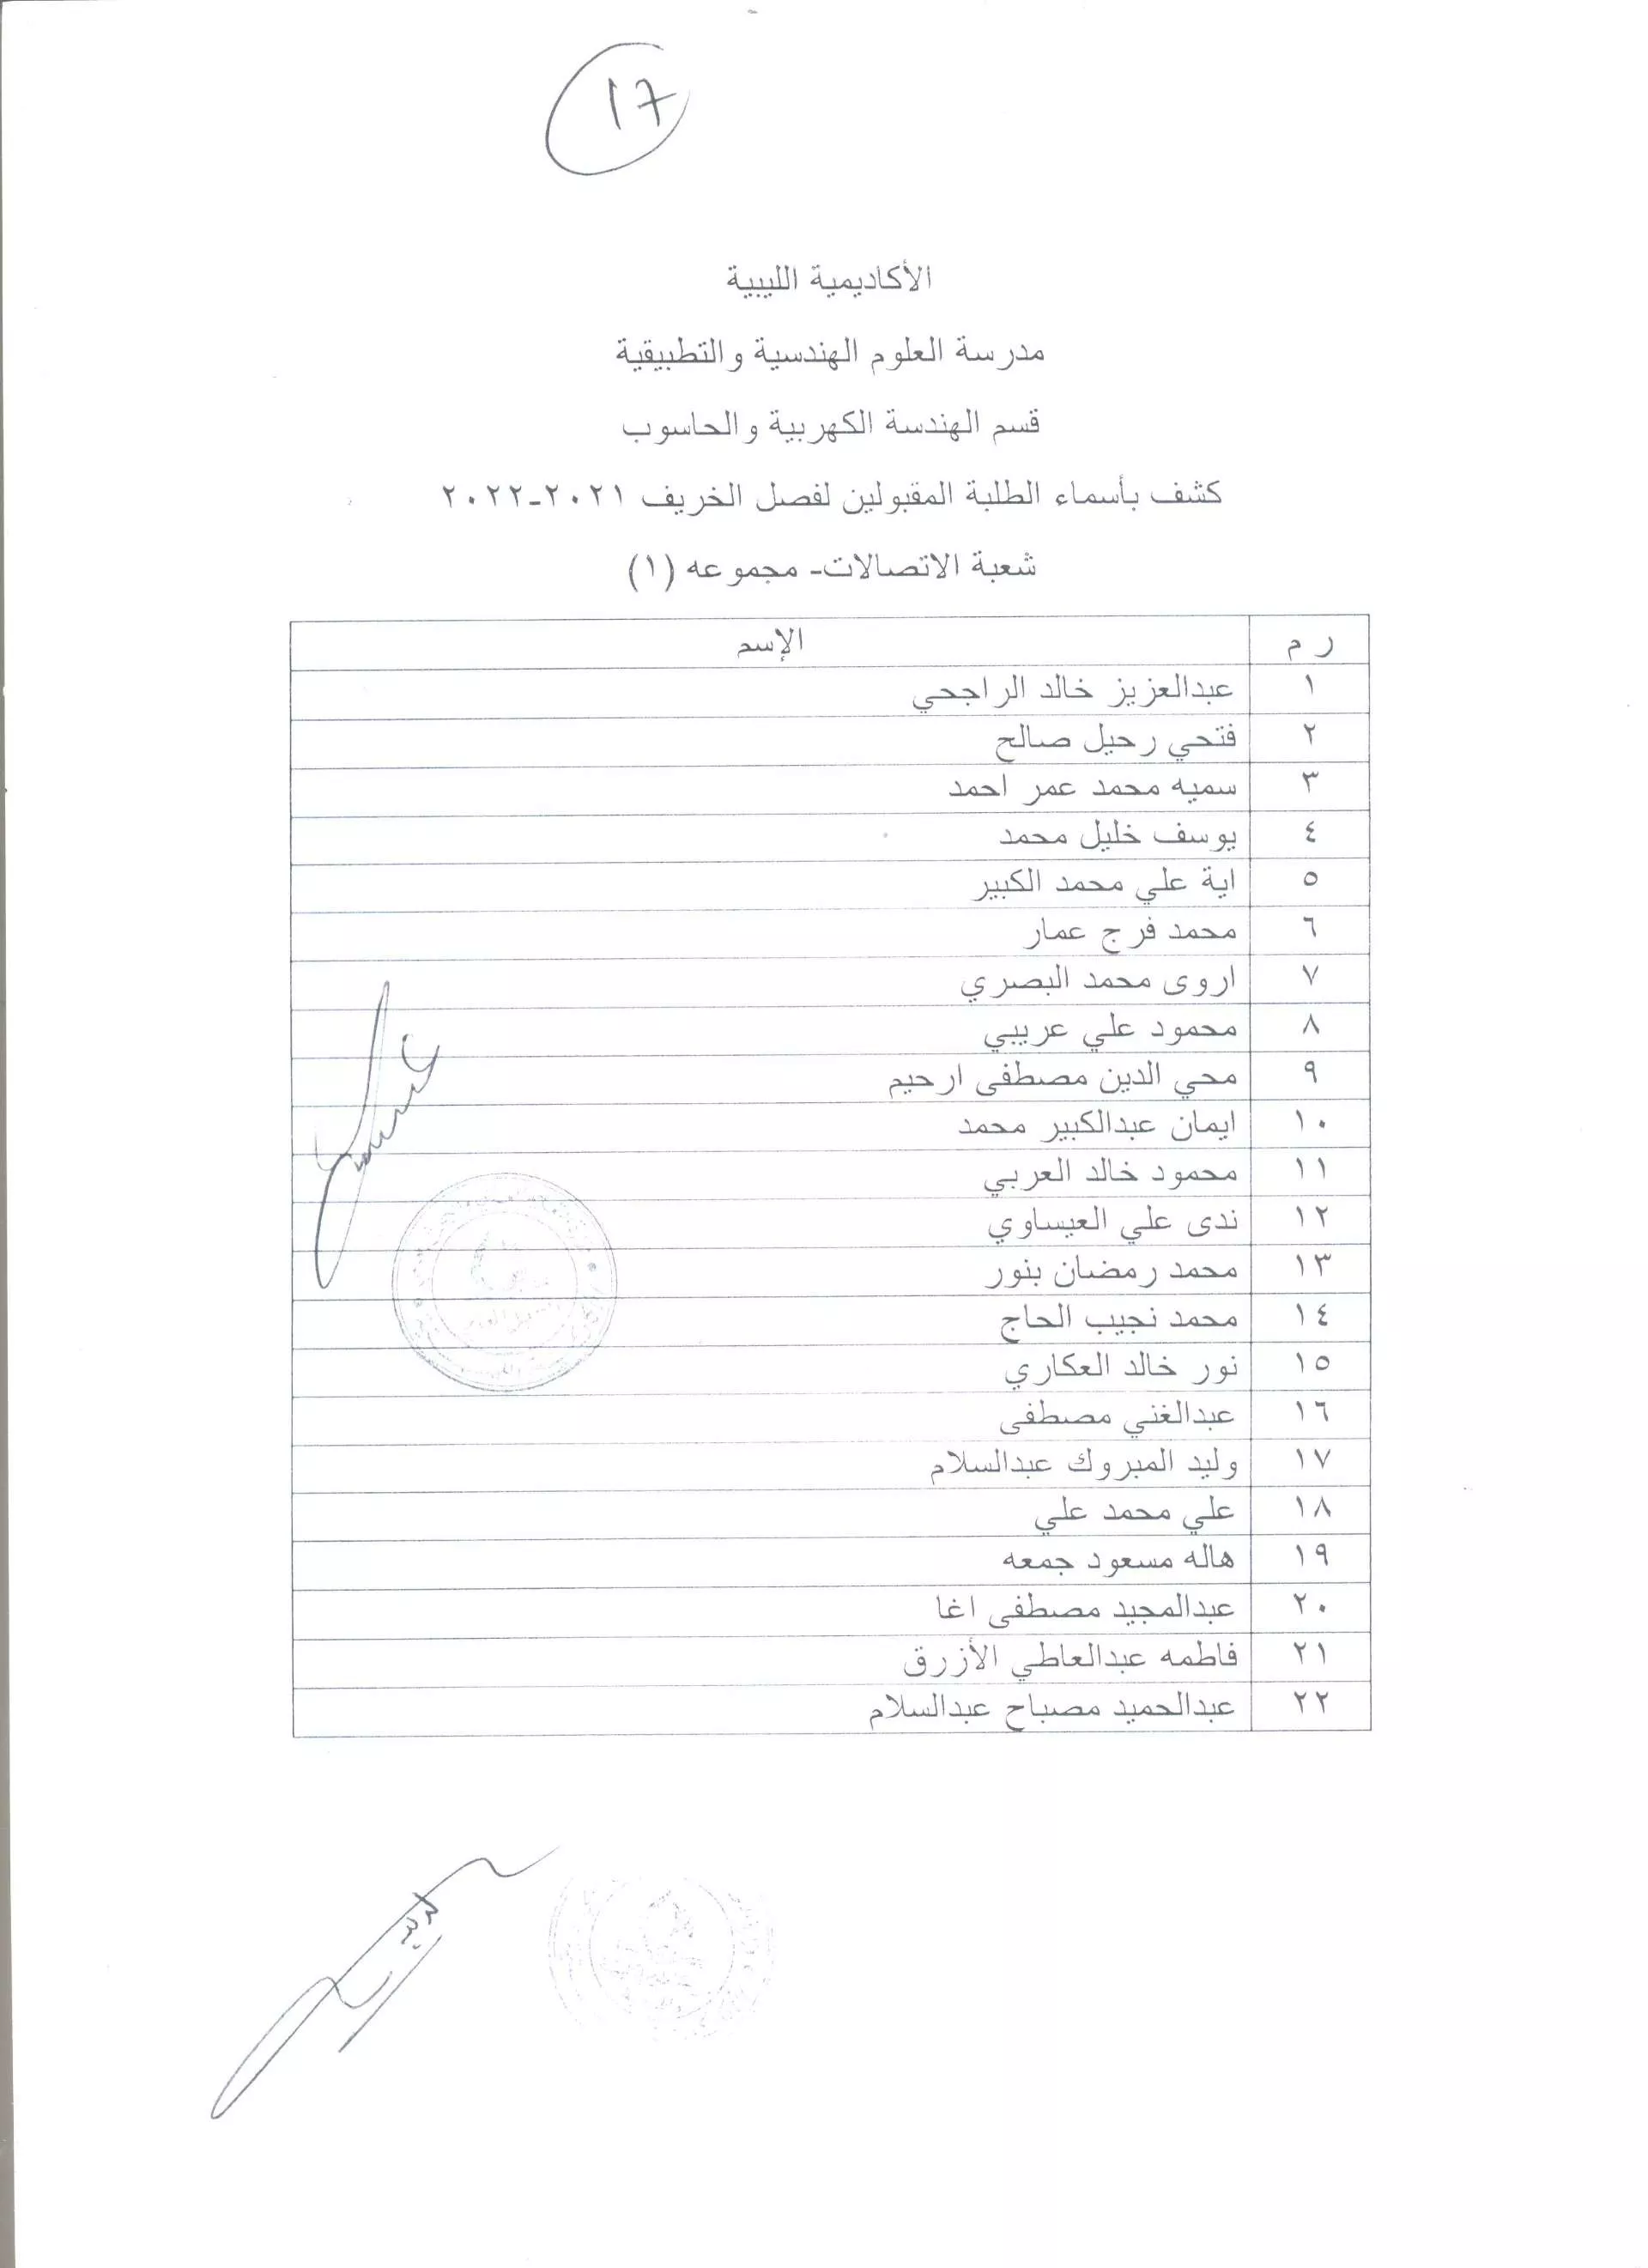 نتائج المفاضلة للطلاب المتقدمين للدراسة بالأكاديمية الليبية 2021 - 2022